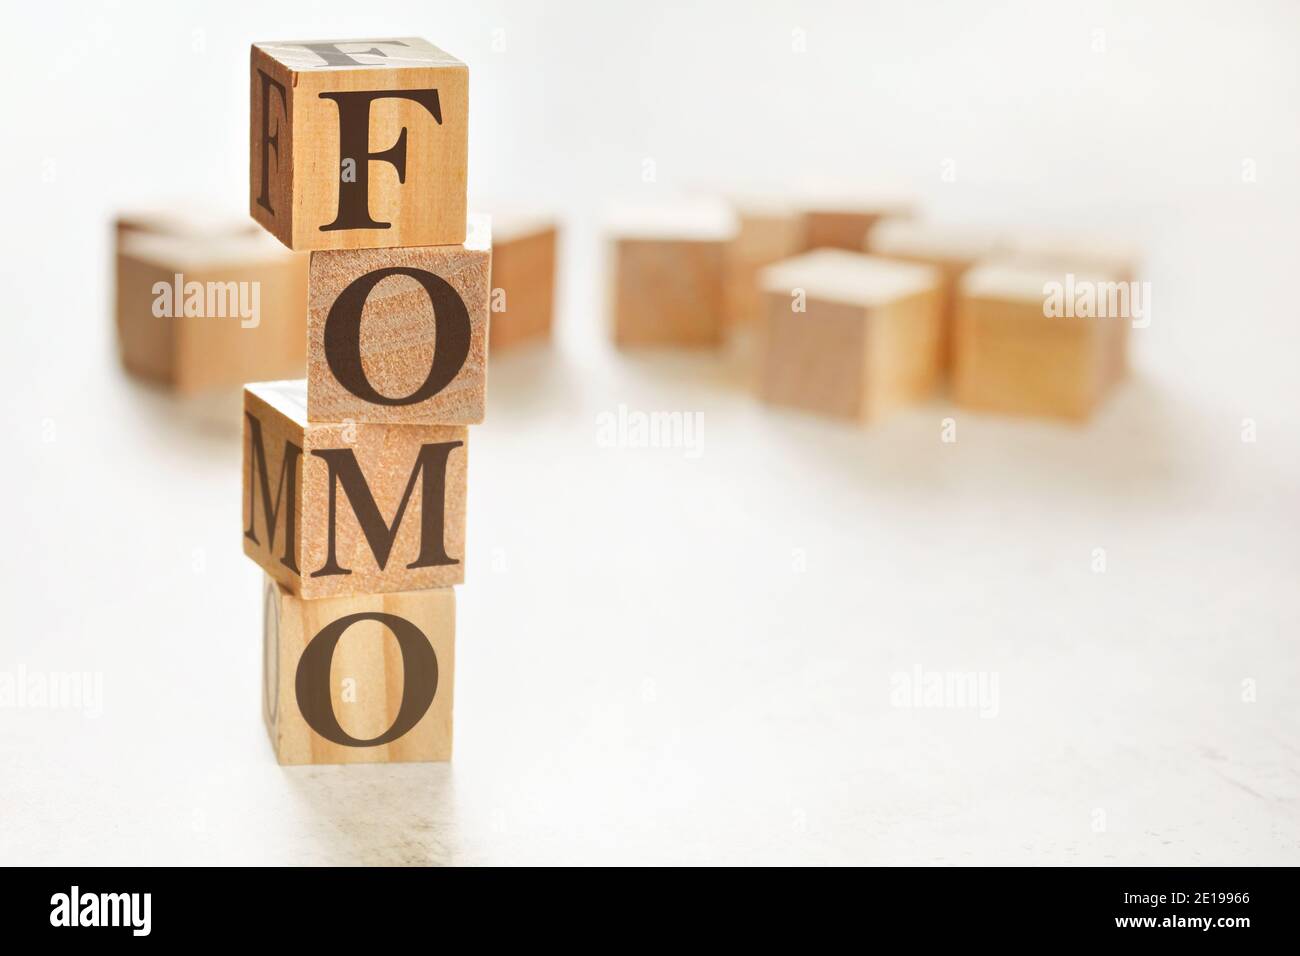 Quattro cubi di legno disposti in pila con lettere FOMO (che significa paura di perdere fuori) su di loro, spazio per il testo / immagine in basso a destra angolo Foto Stock